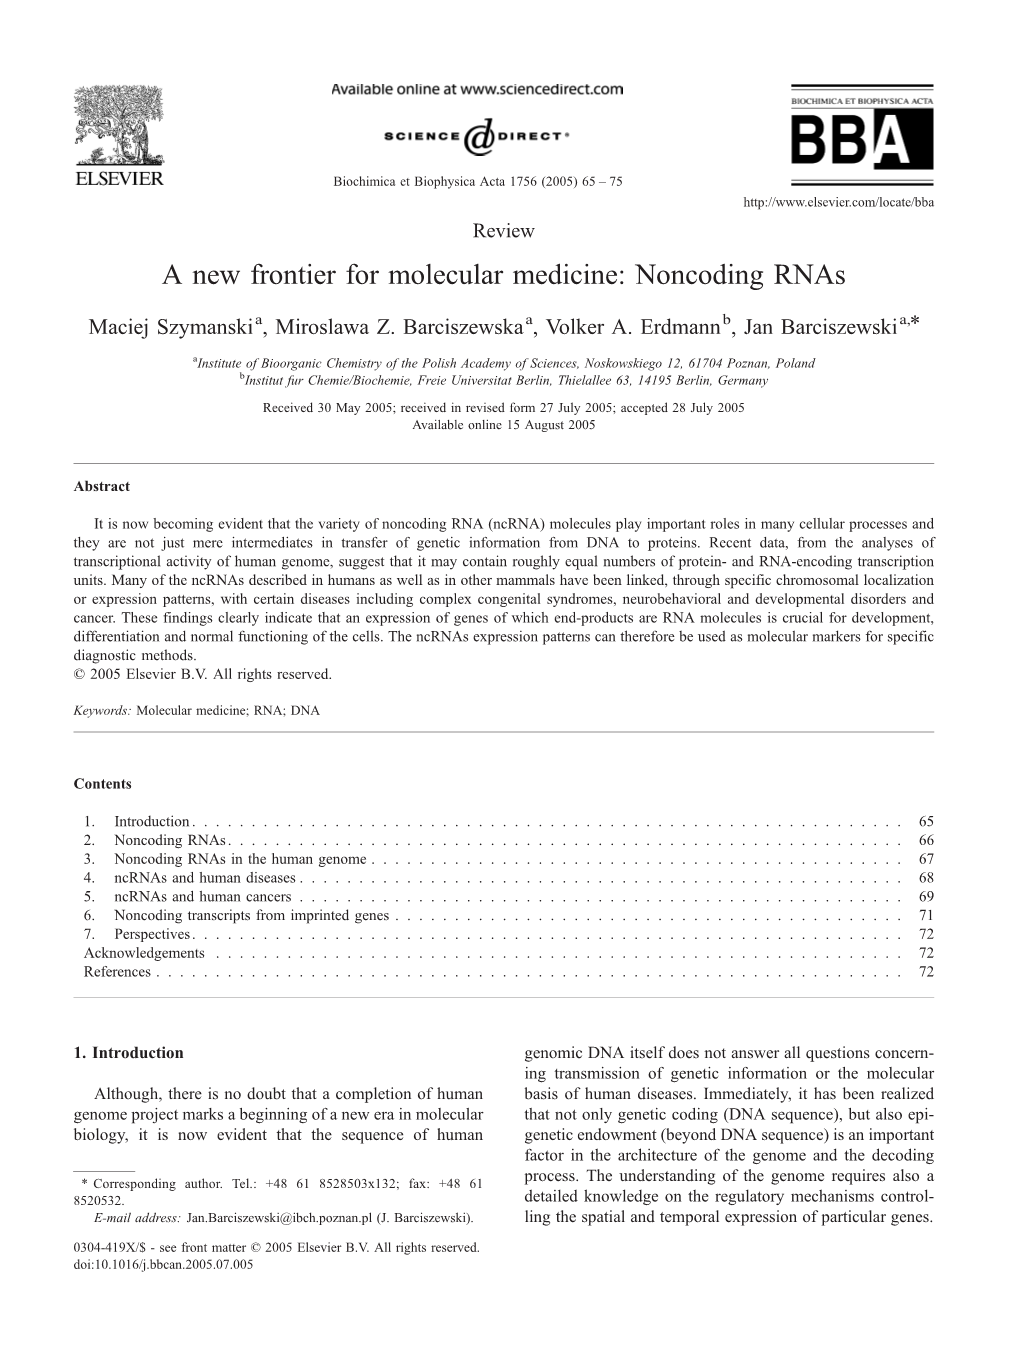 A New Frontier for Molecular Medicine: Noncoding Rnas